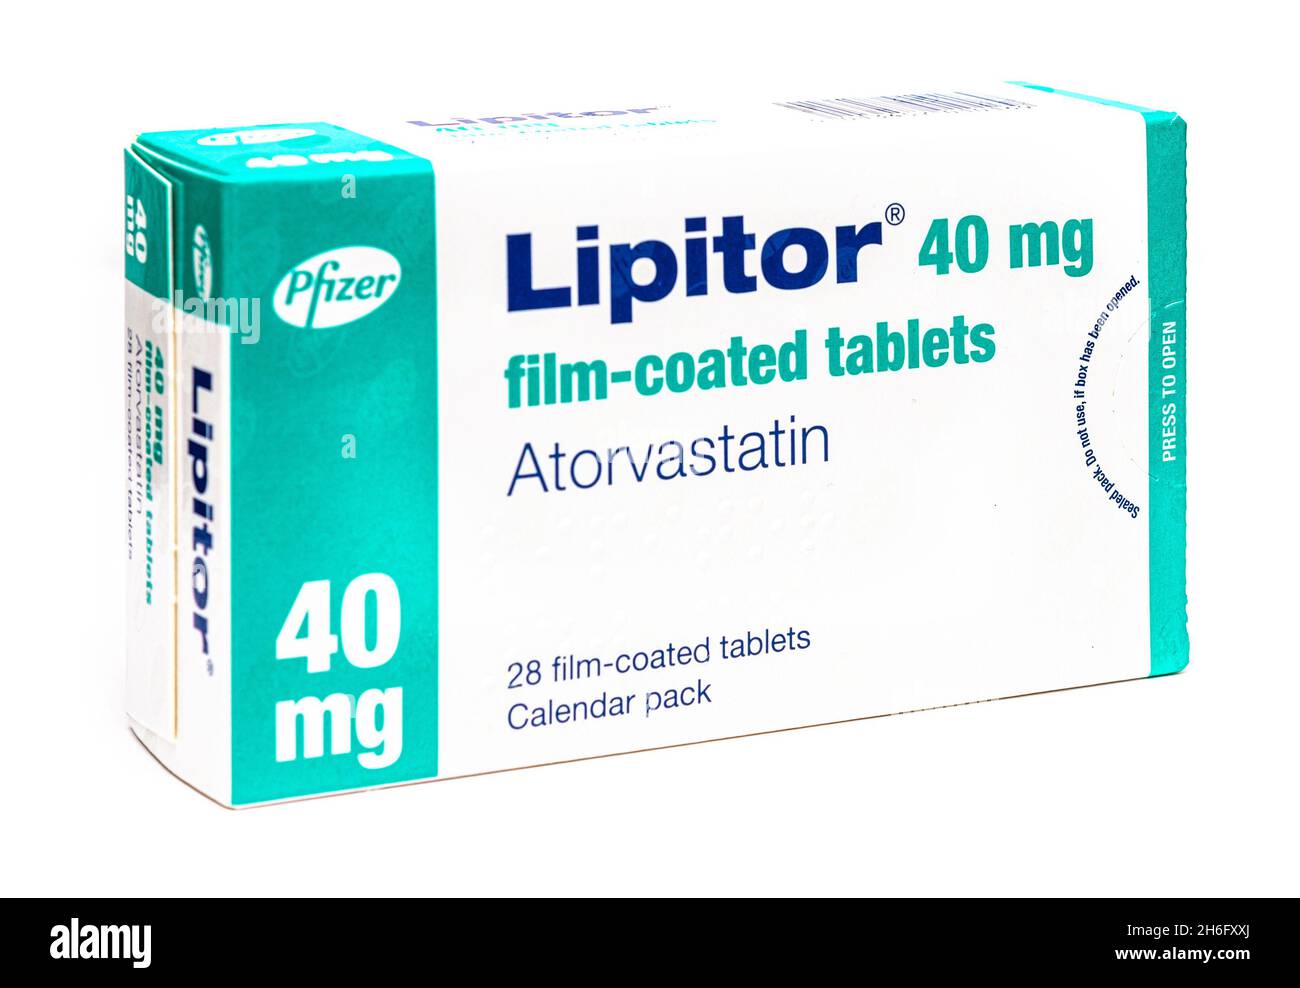 SWINDON, Großbritannien - 15. NOVEMBER 2021: Schachtel mit 40 mg Pfizer Lipitor Atorvastatin Statin Tabletten auf weißem Hintergrund Stockfoto